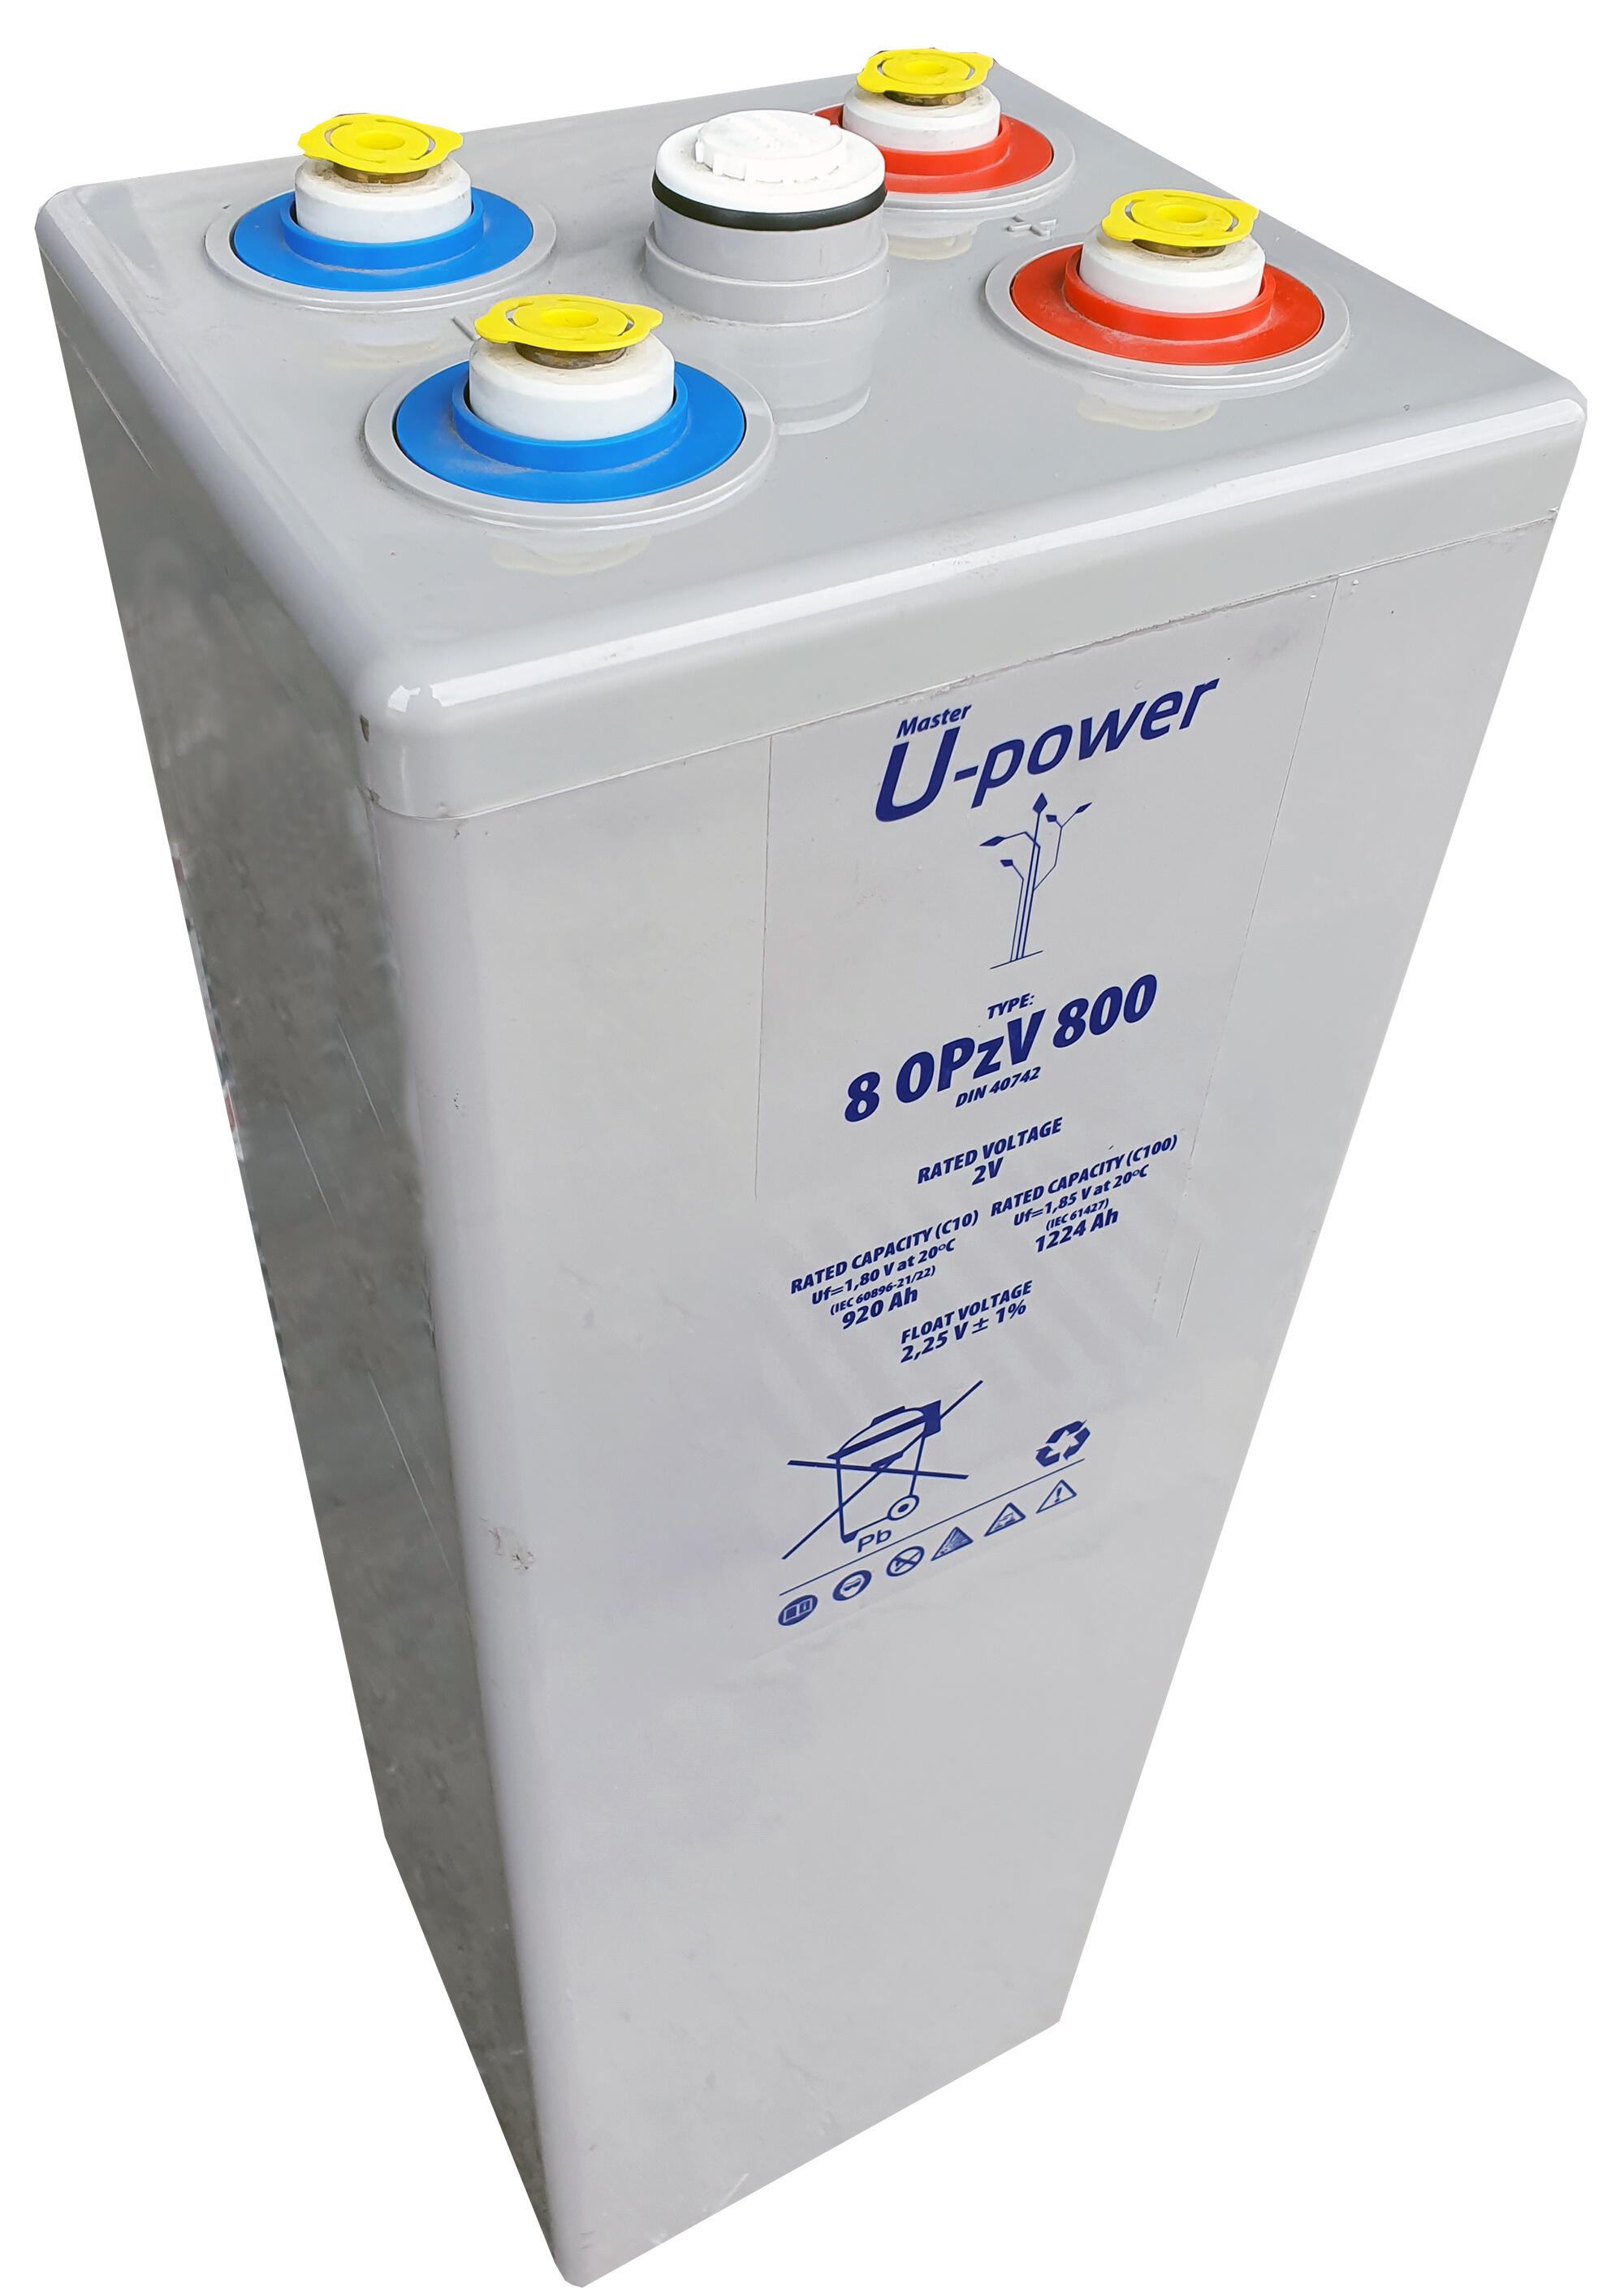 Batería solar estacionaria de gel u-power 8 opzv 800 2v c100 1224ah